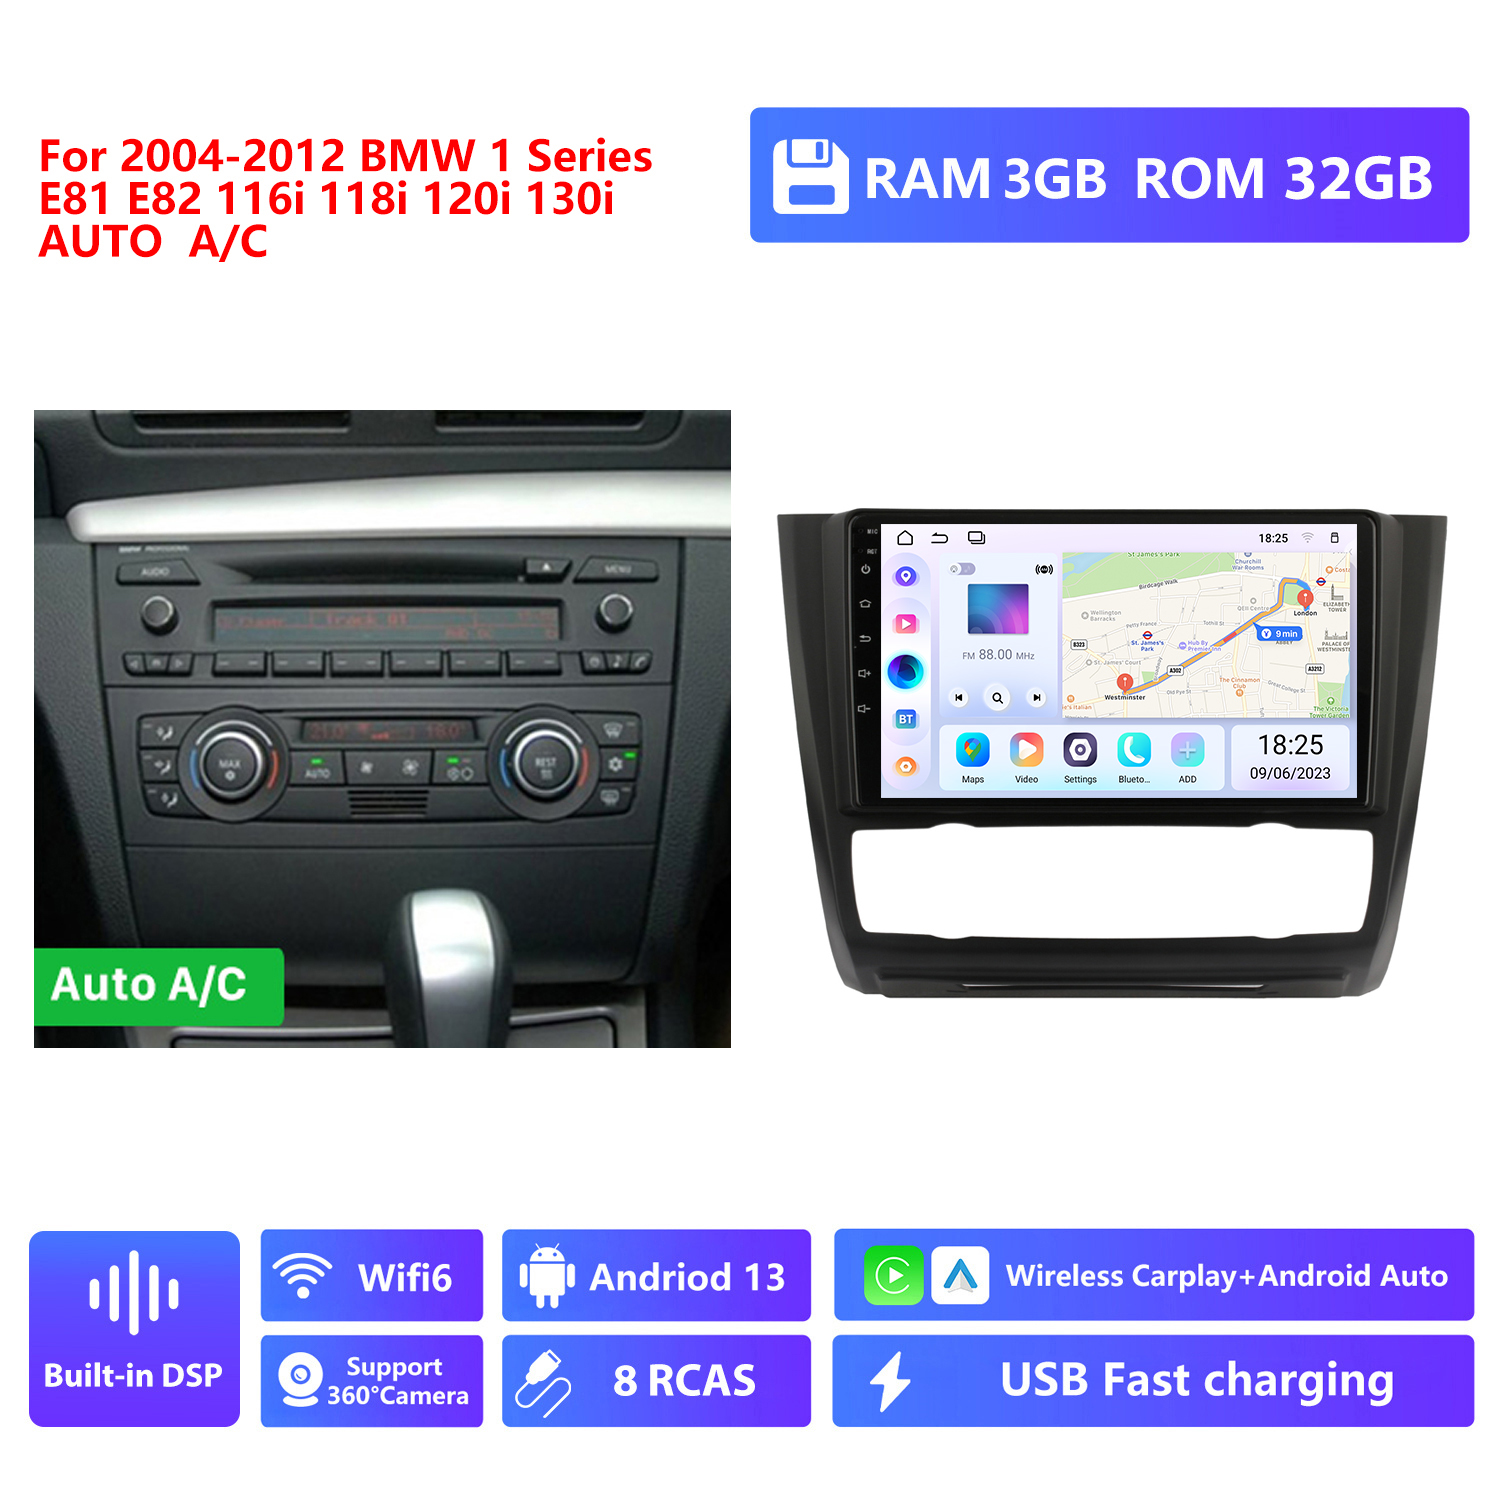 RAM 3G,ROM 32G,Auto A/C